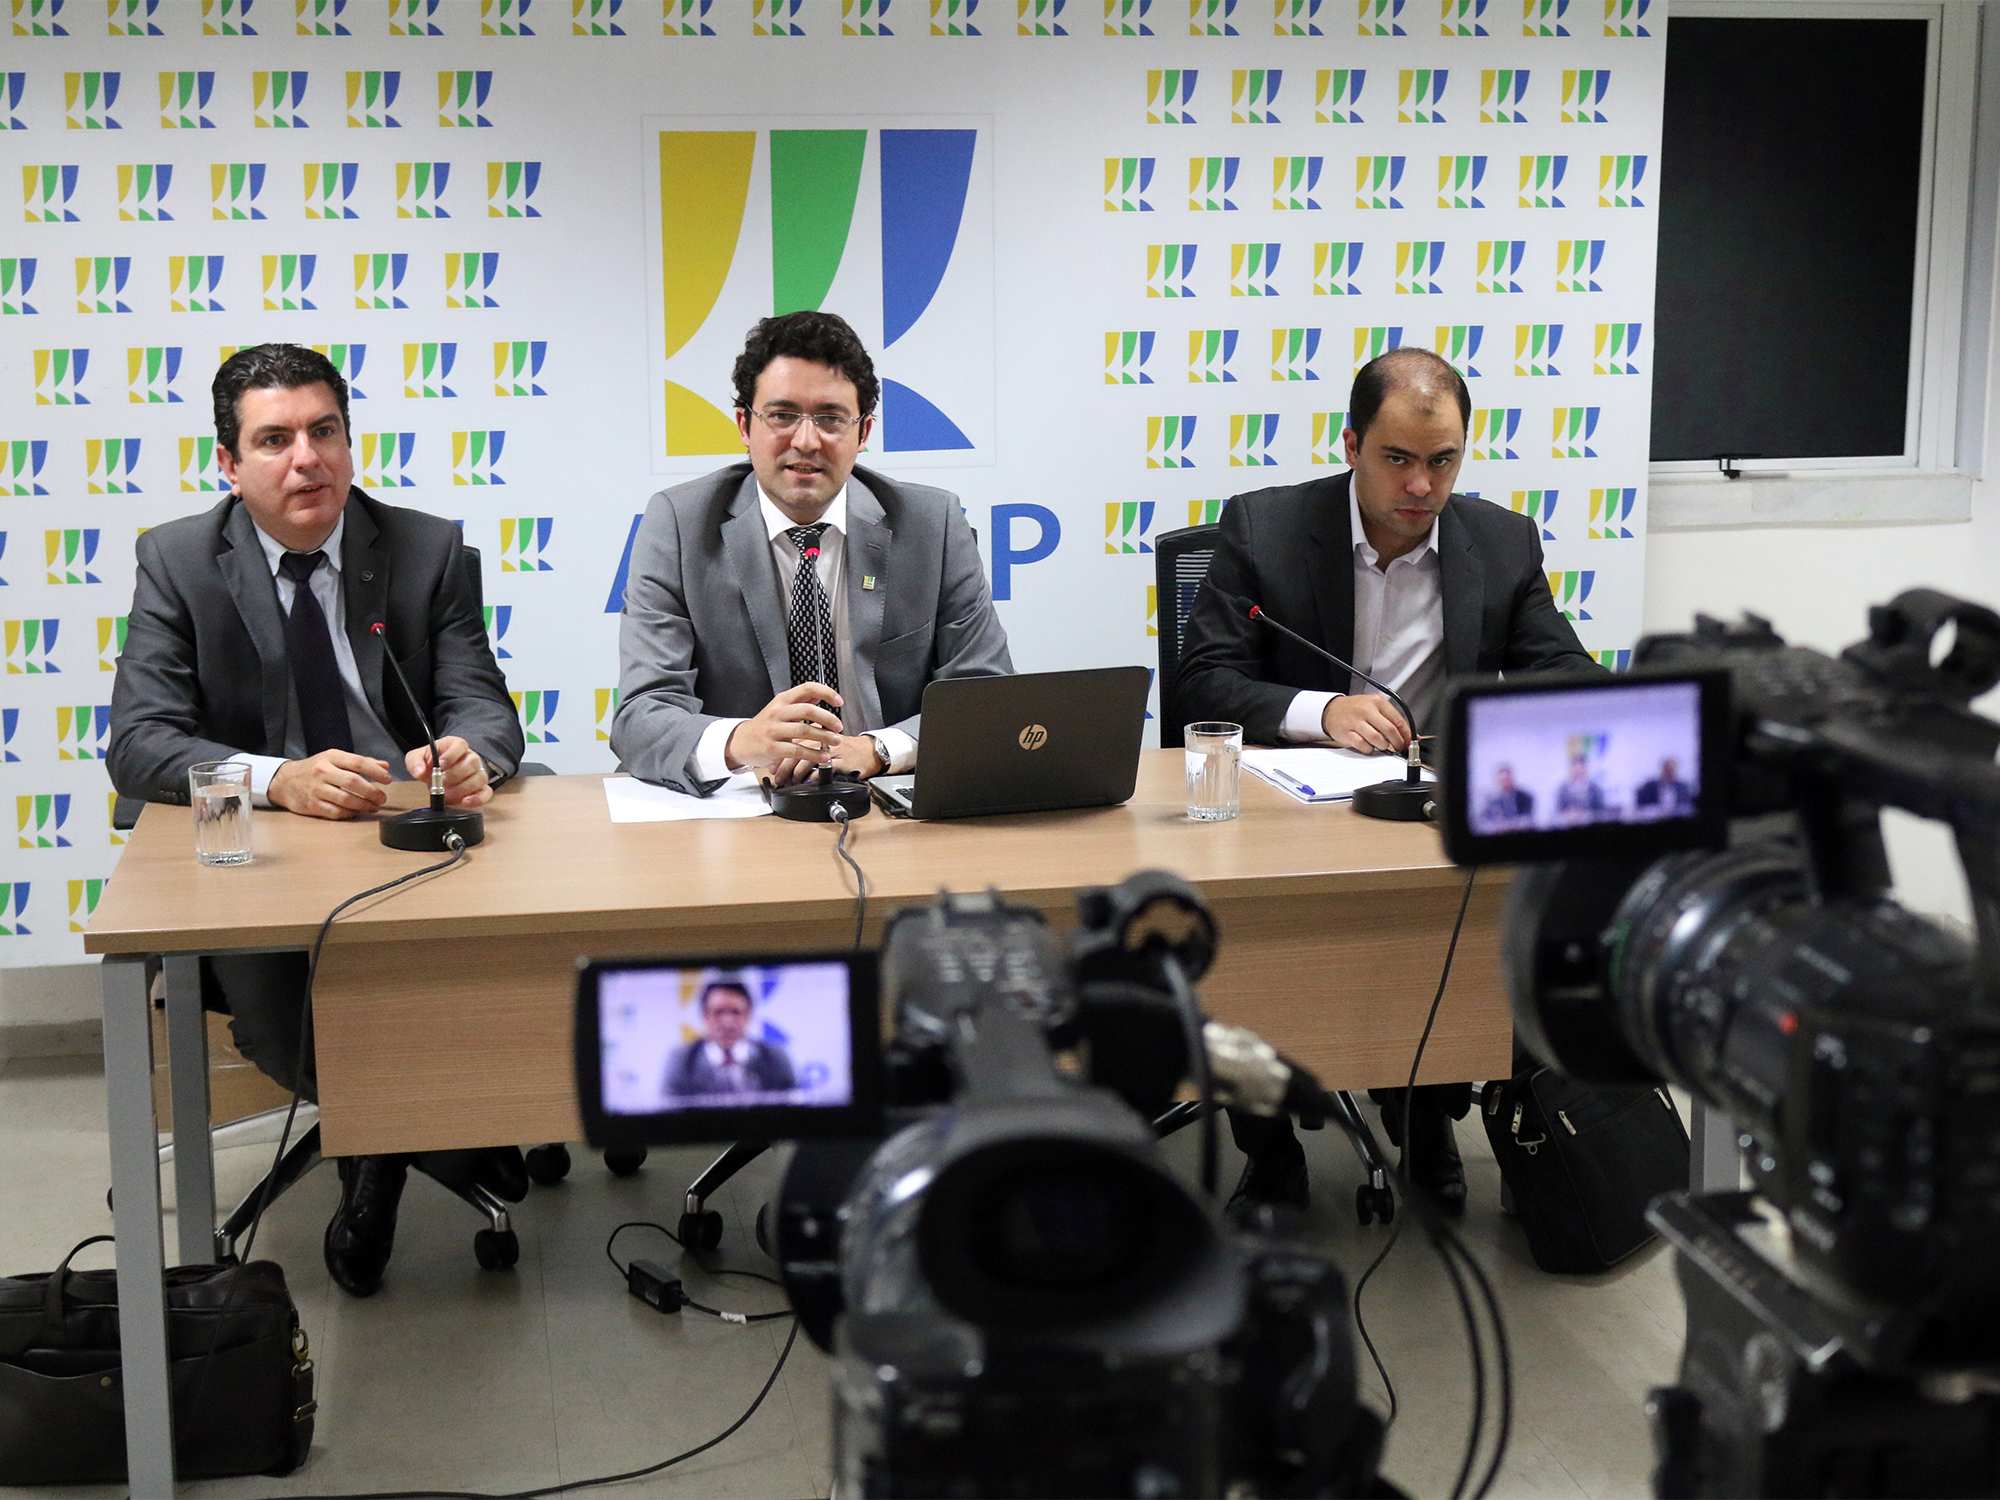  Marlons Arraes, Alex Canuto, e Marcus Eugênio. Fotos: Filipe Calmon / ANESP 